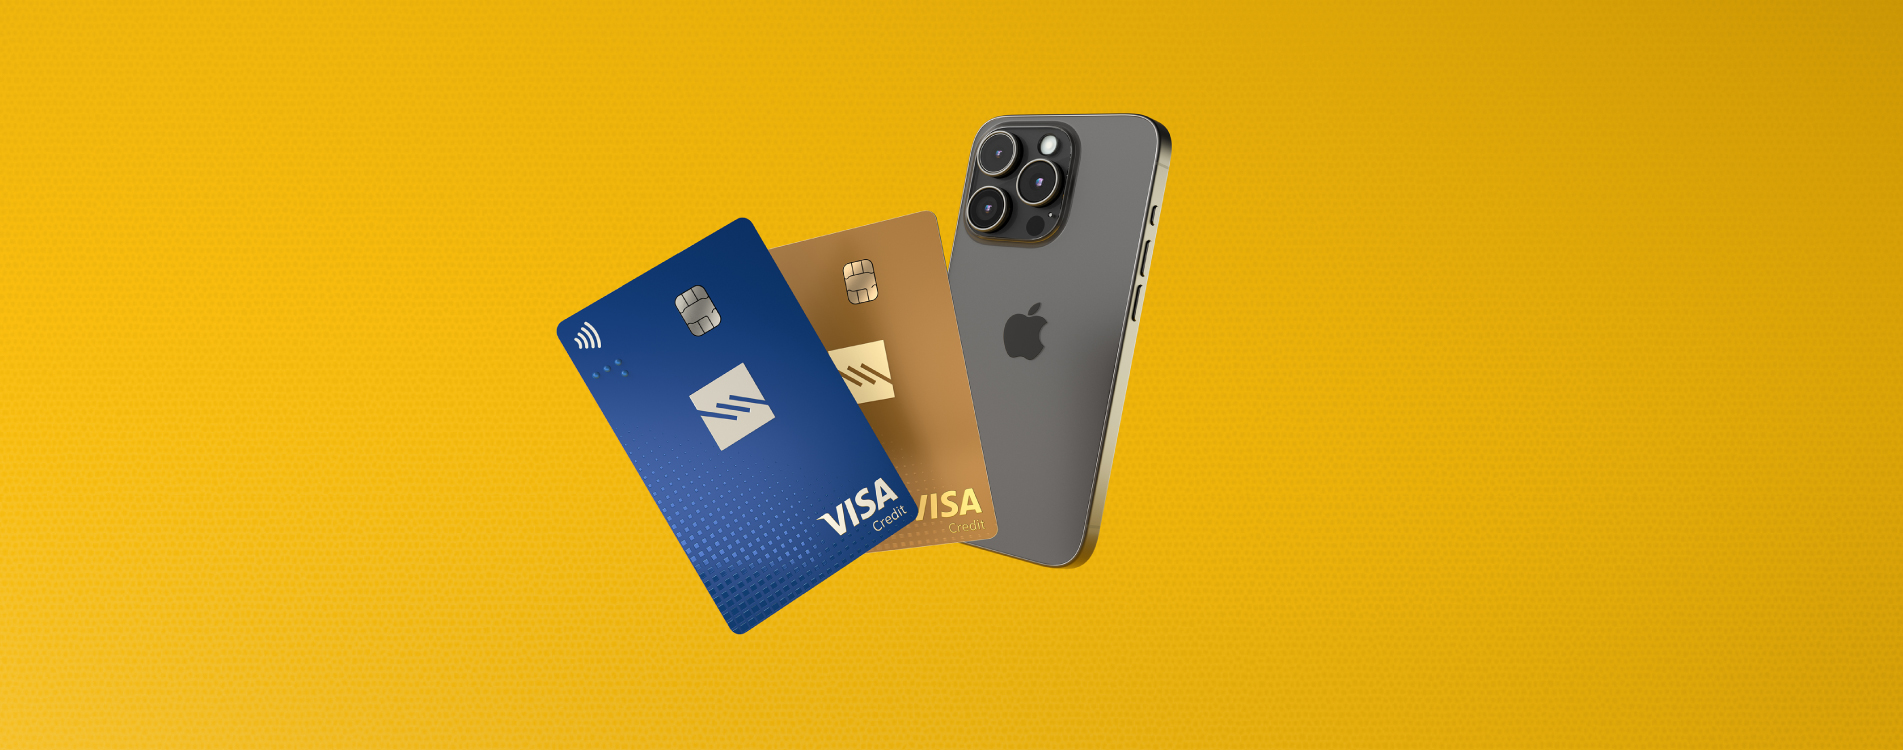 Η νέα σου πιστωτική κάρτα Visa μπορεί να σου χαρίσει το νέο σου κινητό iPhone 15 Pro